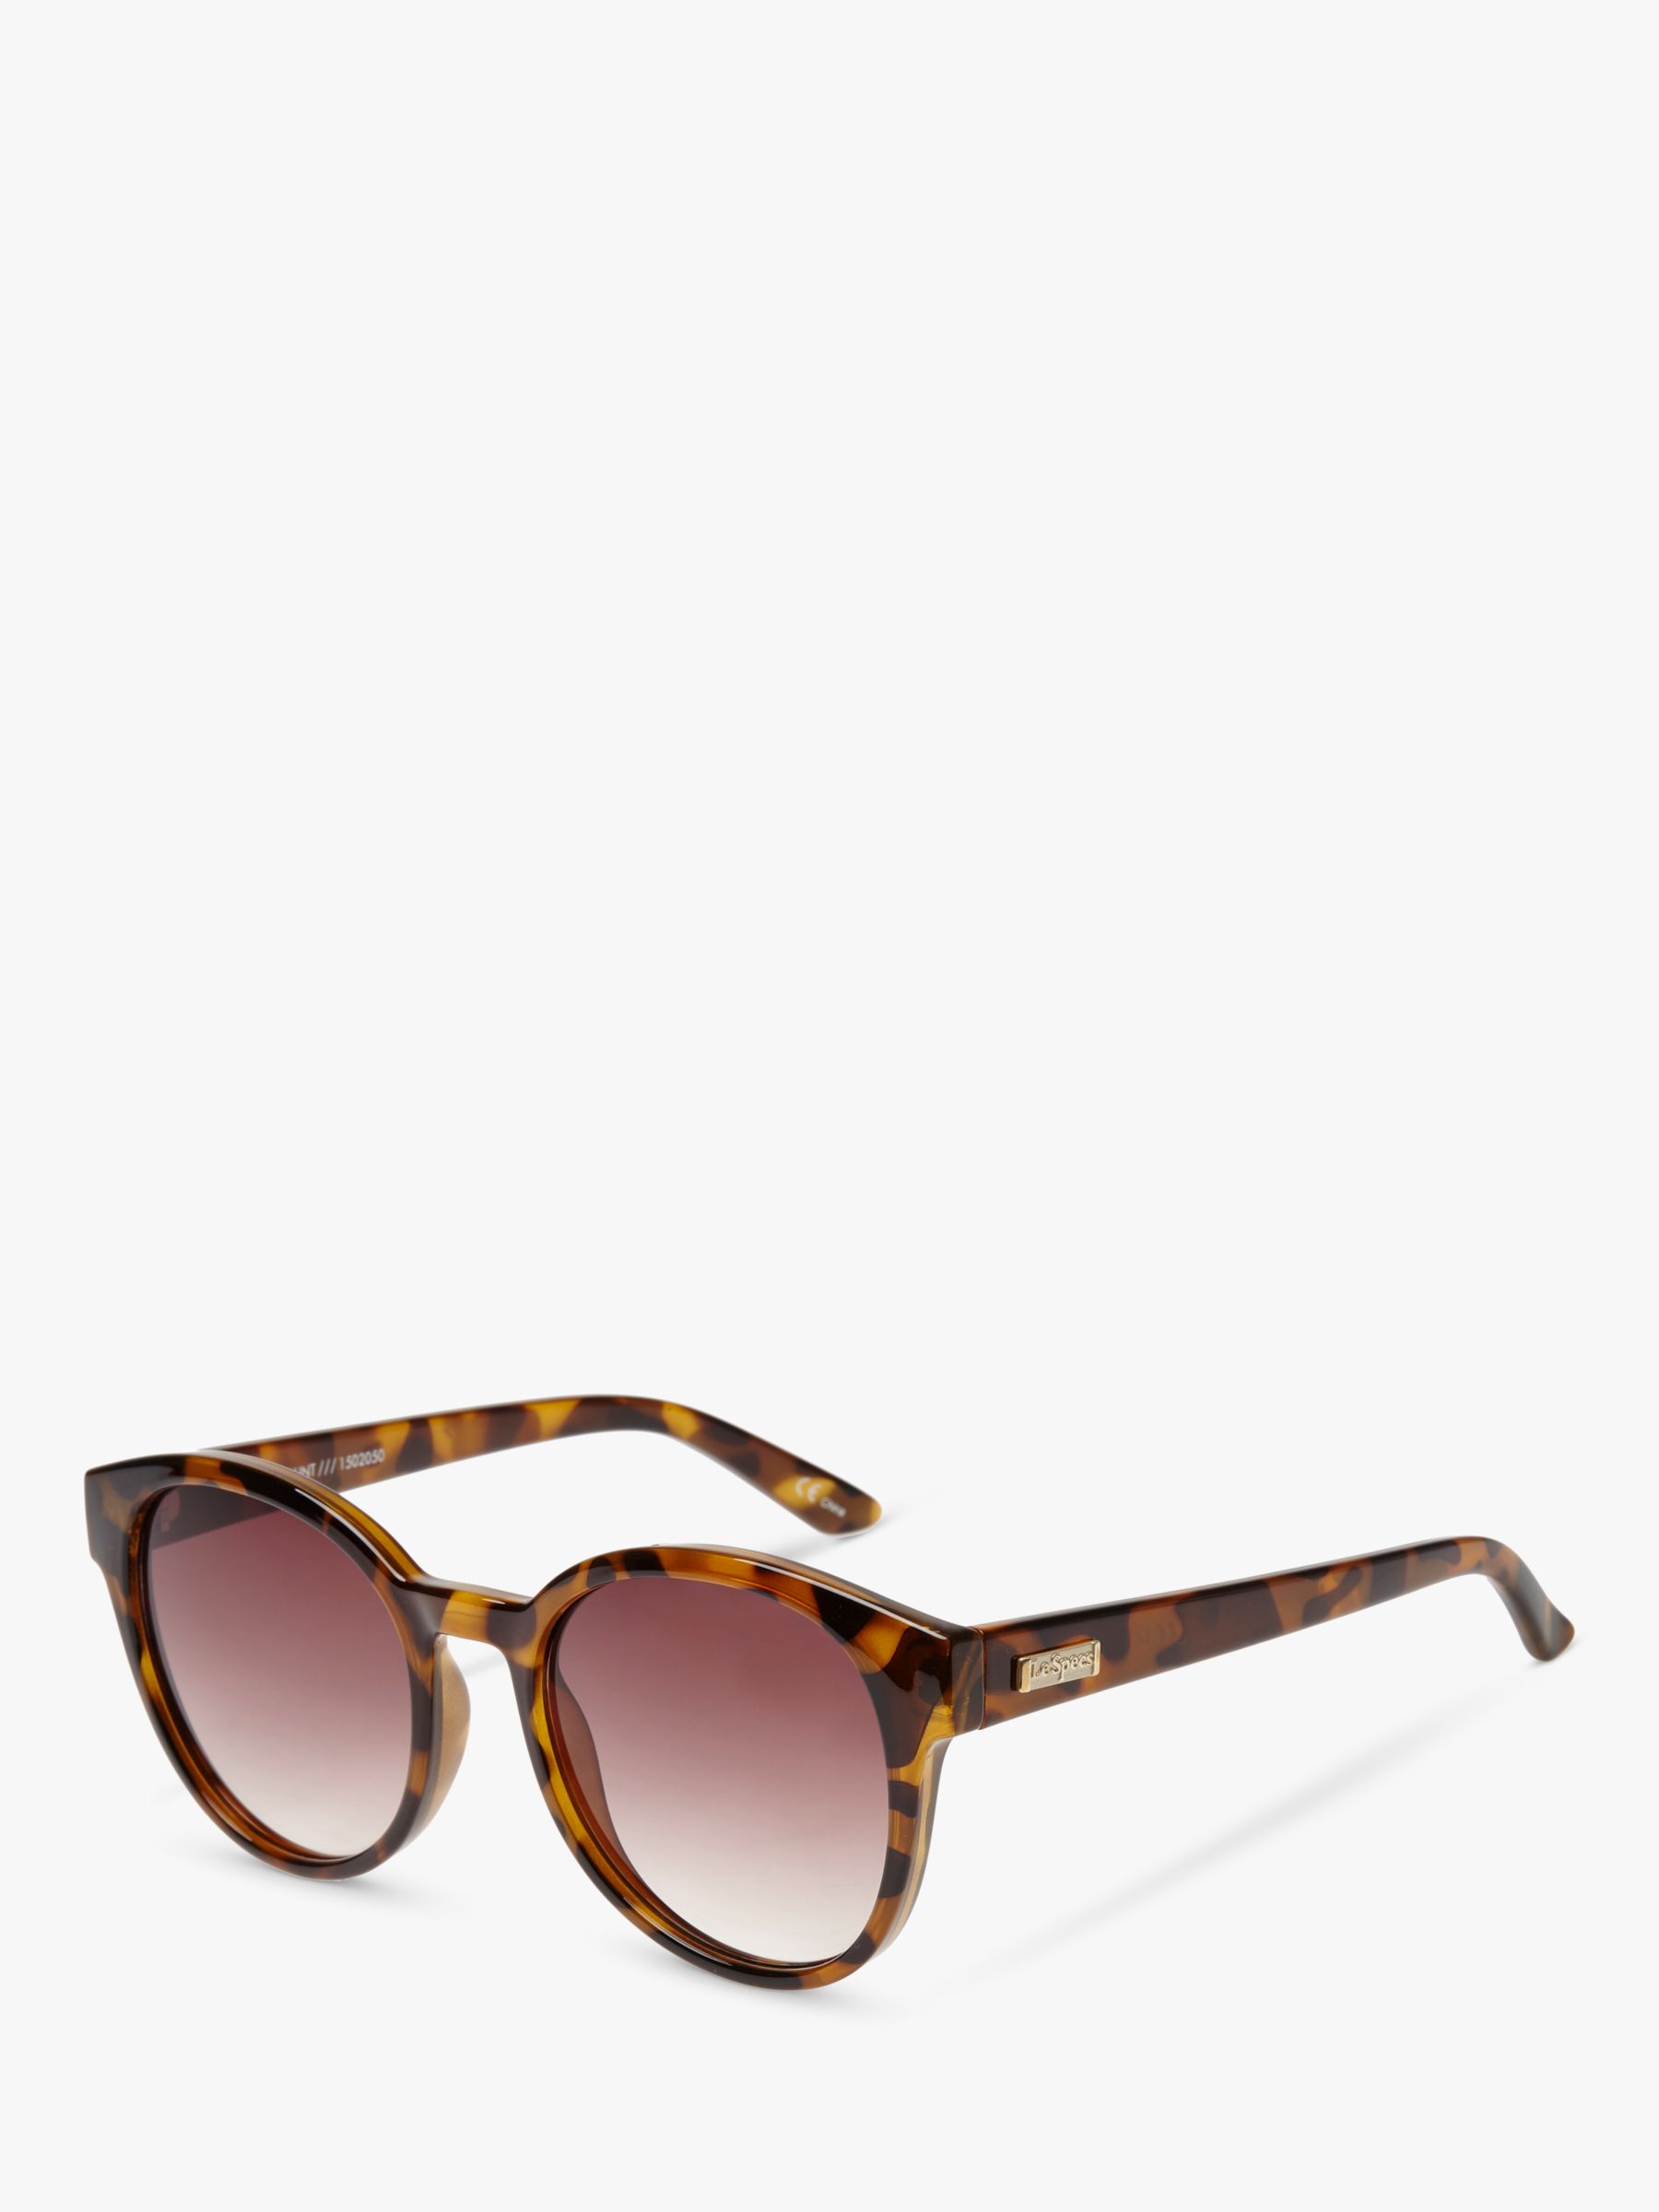 цена L5000183 Женские круглые солнцезащитные очки Paramount Le Specs, черепаховый/коричневый градиент